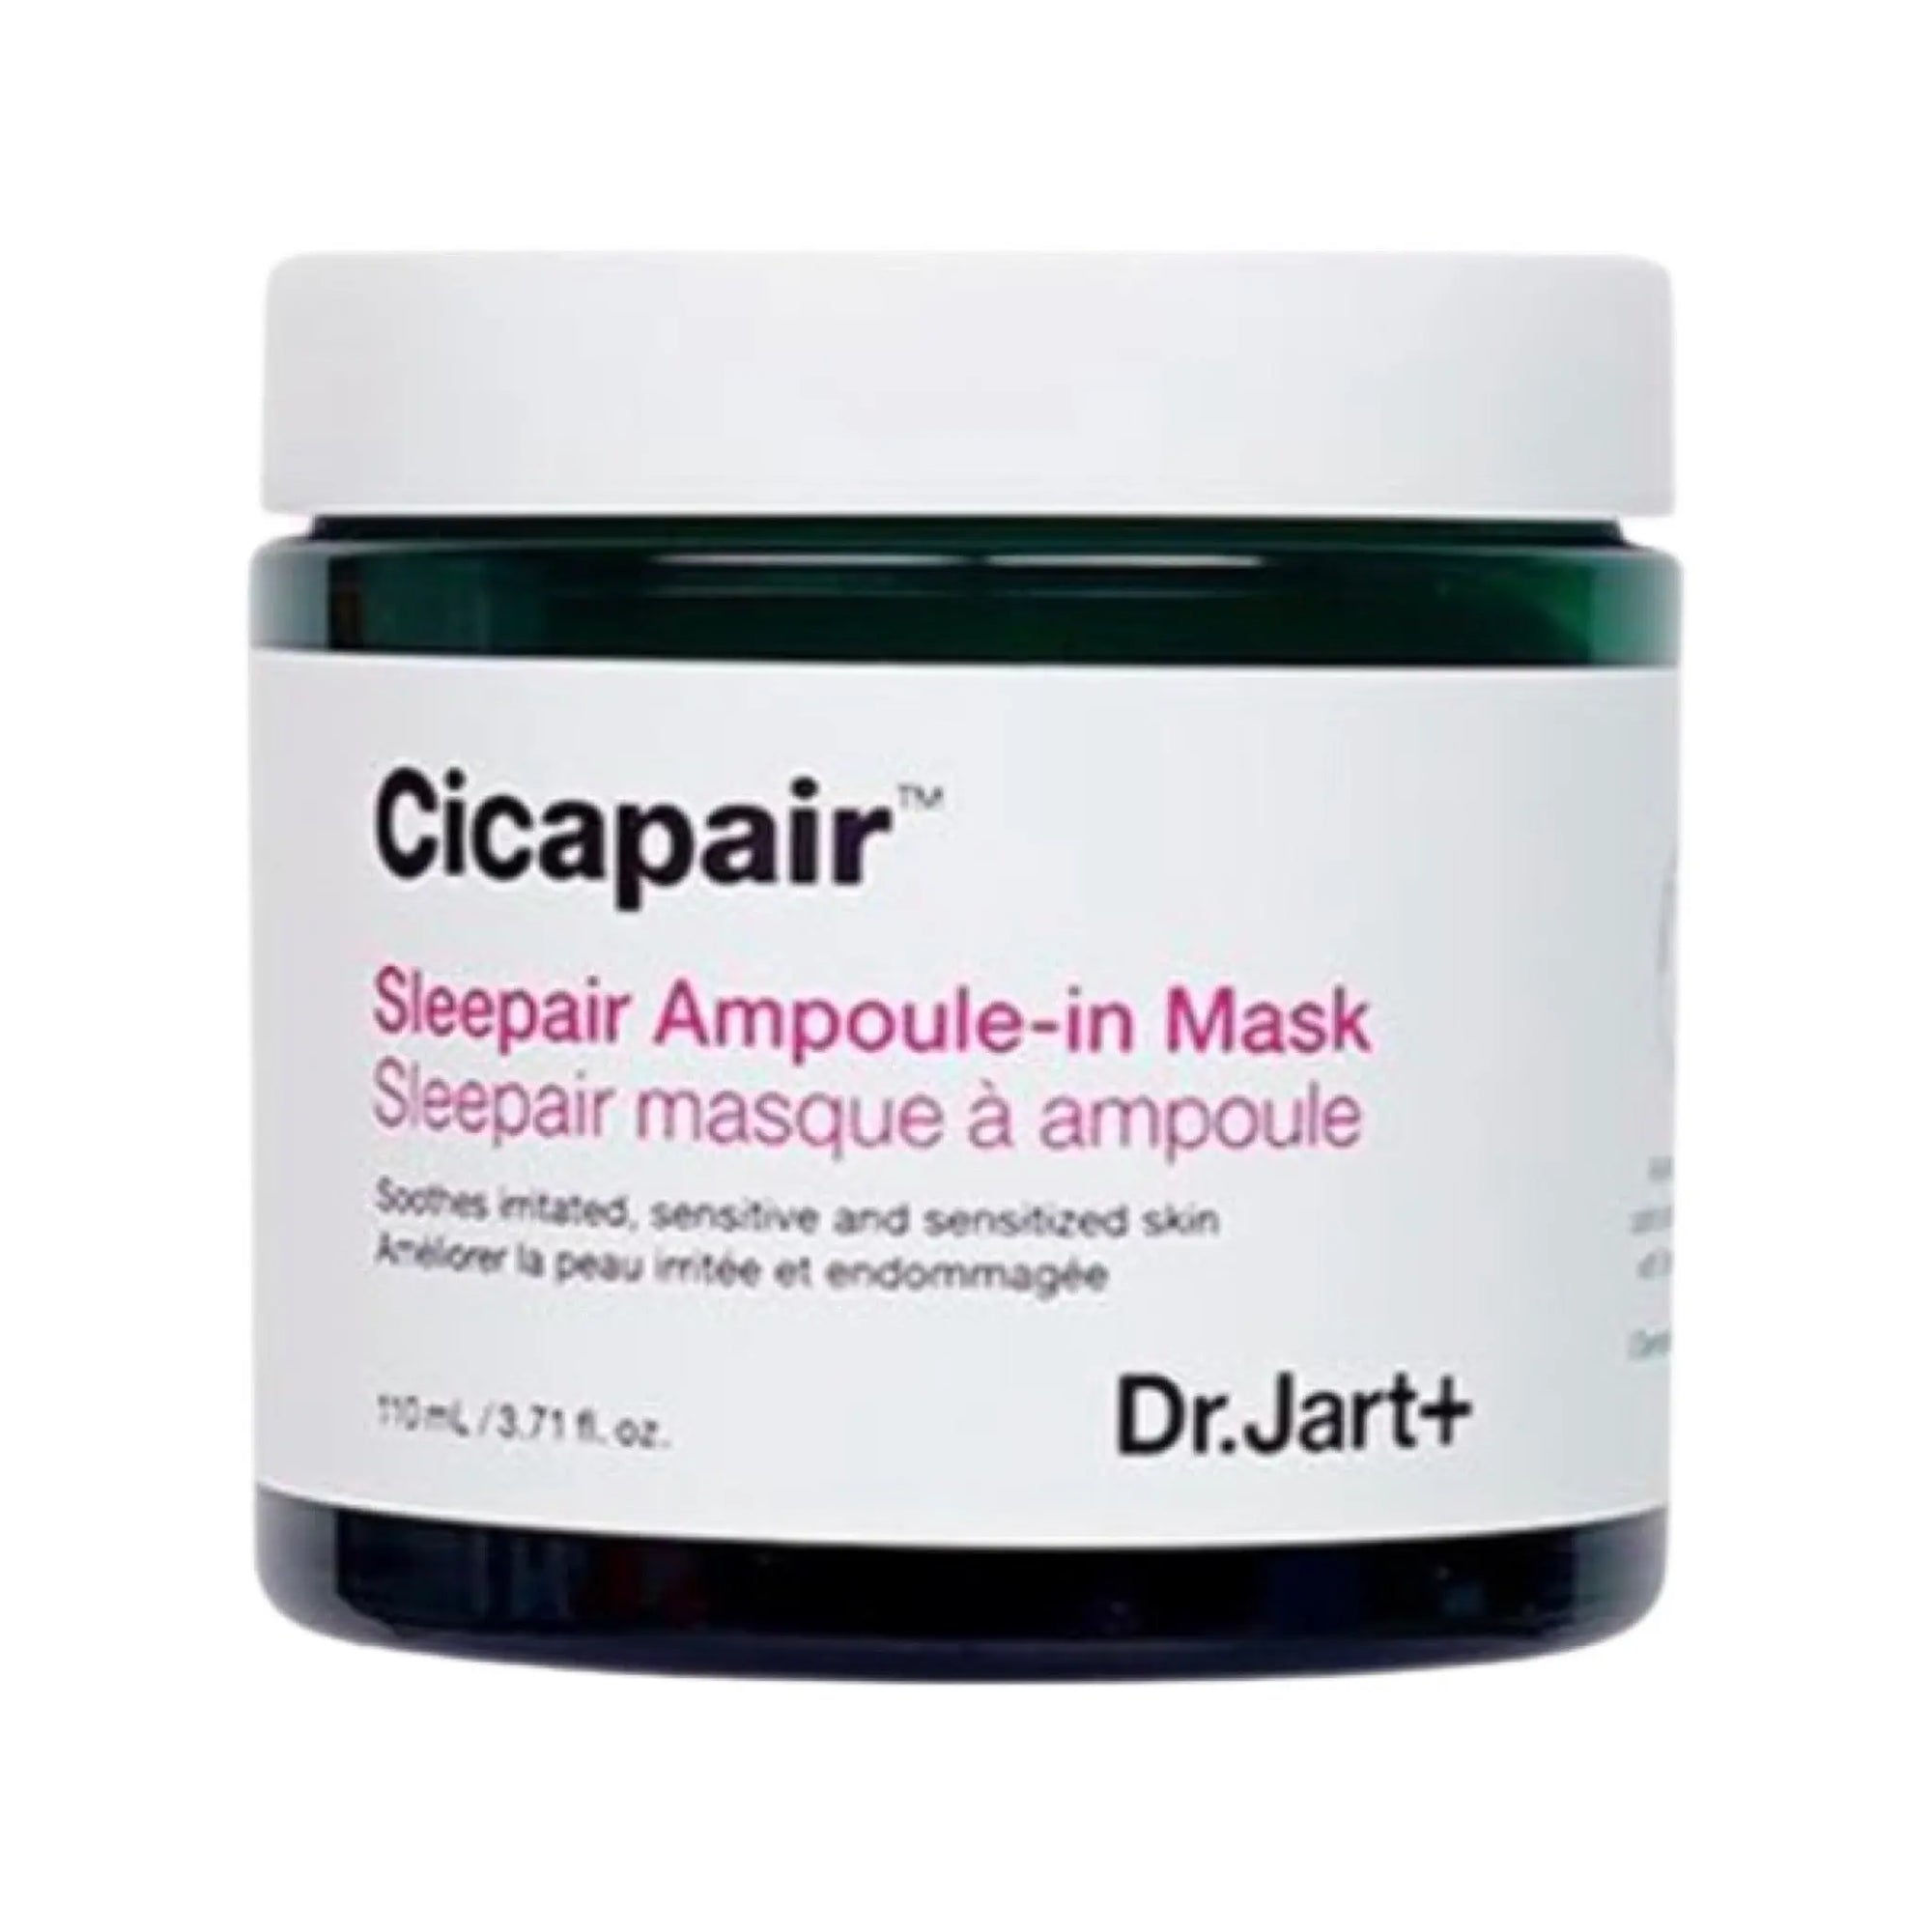 Dr. Jart+ - Cicapair Sleepair Ampoule-in Mask Dr. Jart+